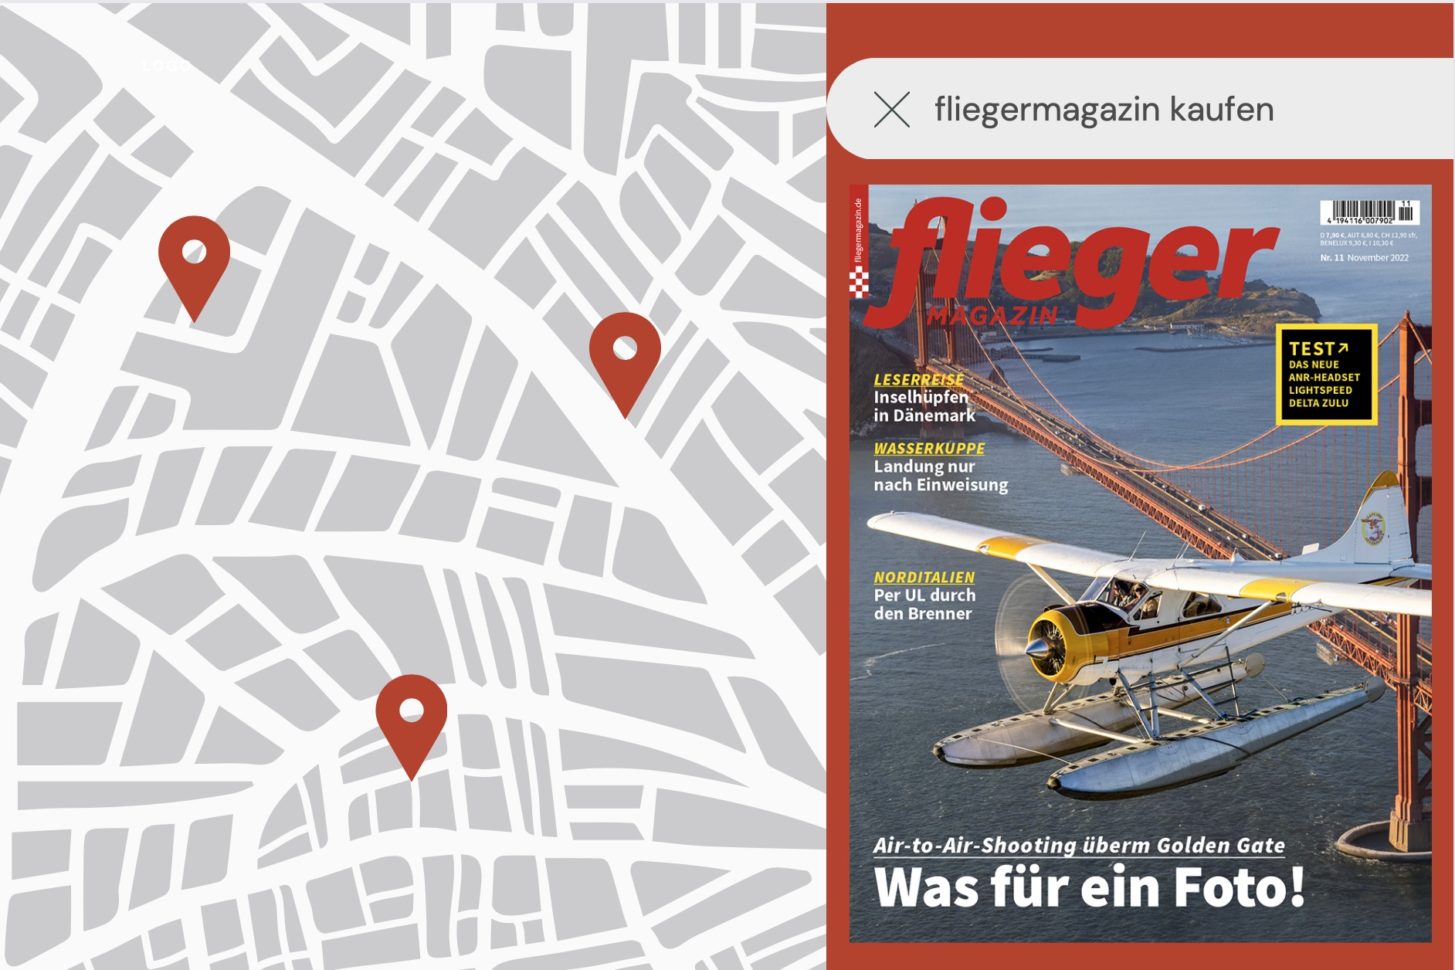 fliegermagazin kaufen: Wo finde ich das Heft?